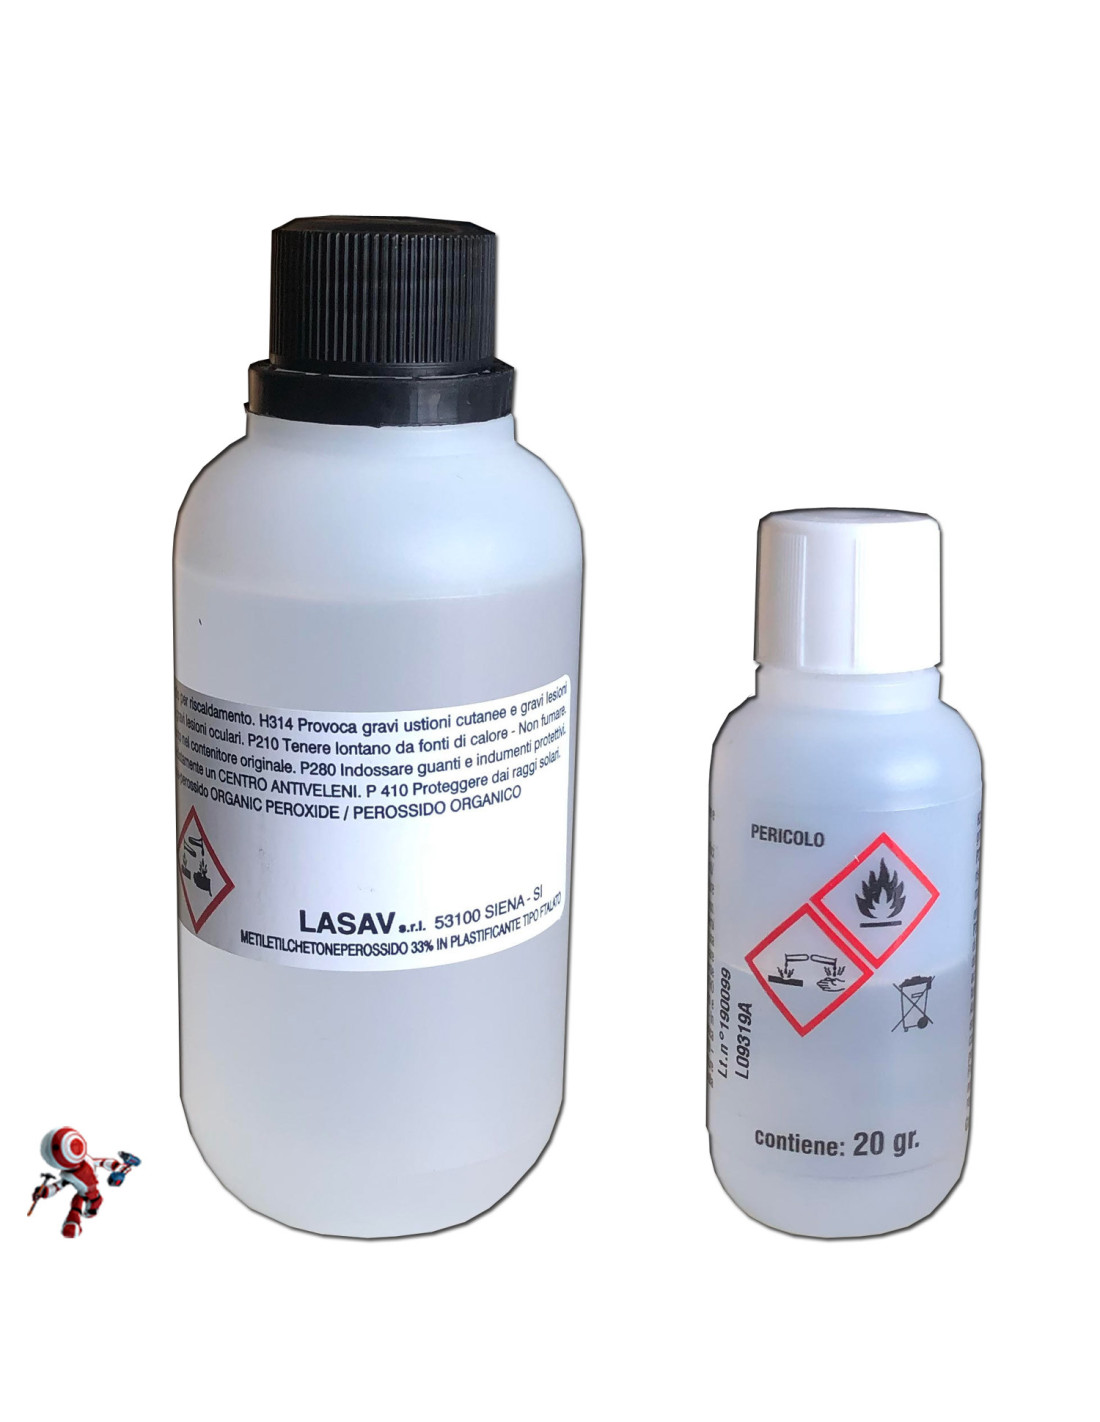  Catalizzatore liquido per vetroresina Catalizzatore per resina polyestere Confezioni da 20 e 110 grammi.